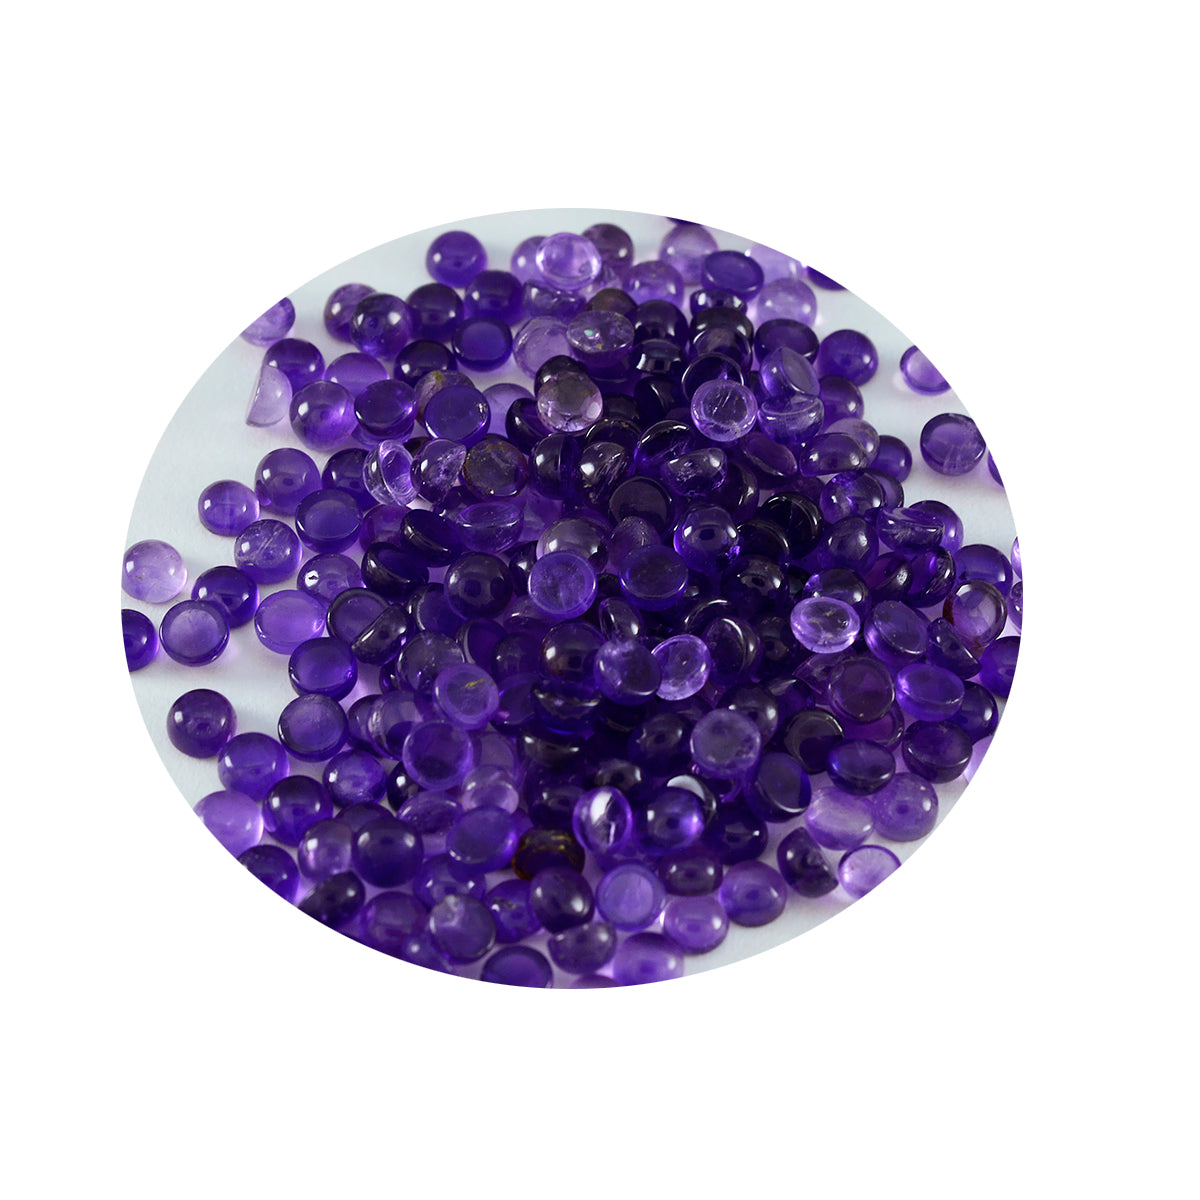 riyogems 1pc cabochon d'améthyste violette 3x3 mm forme ronde pierre précieuse de qualité douce